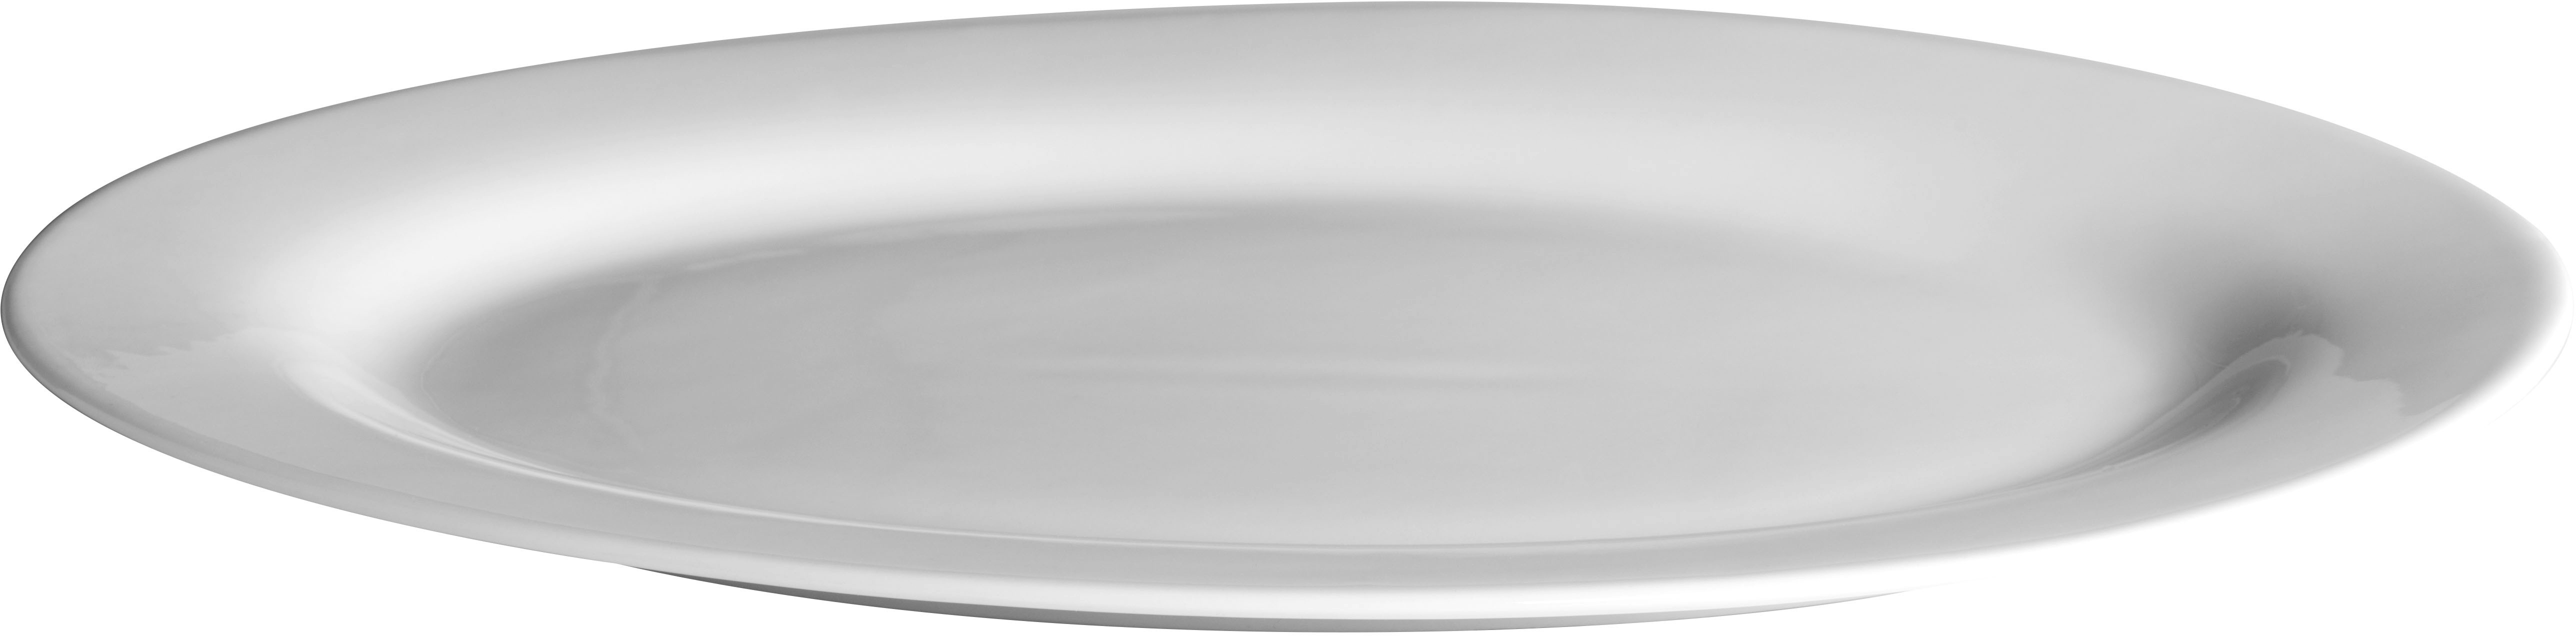 MÄSER Platte oval 30 cm SUPERWHITE, 2er Set